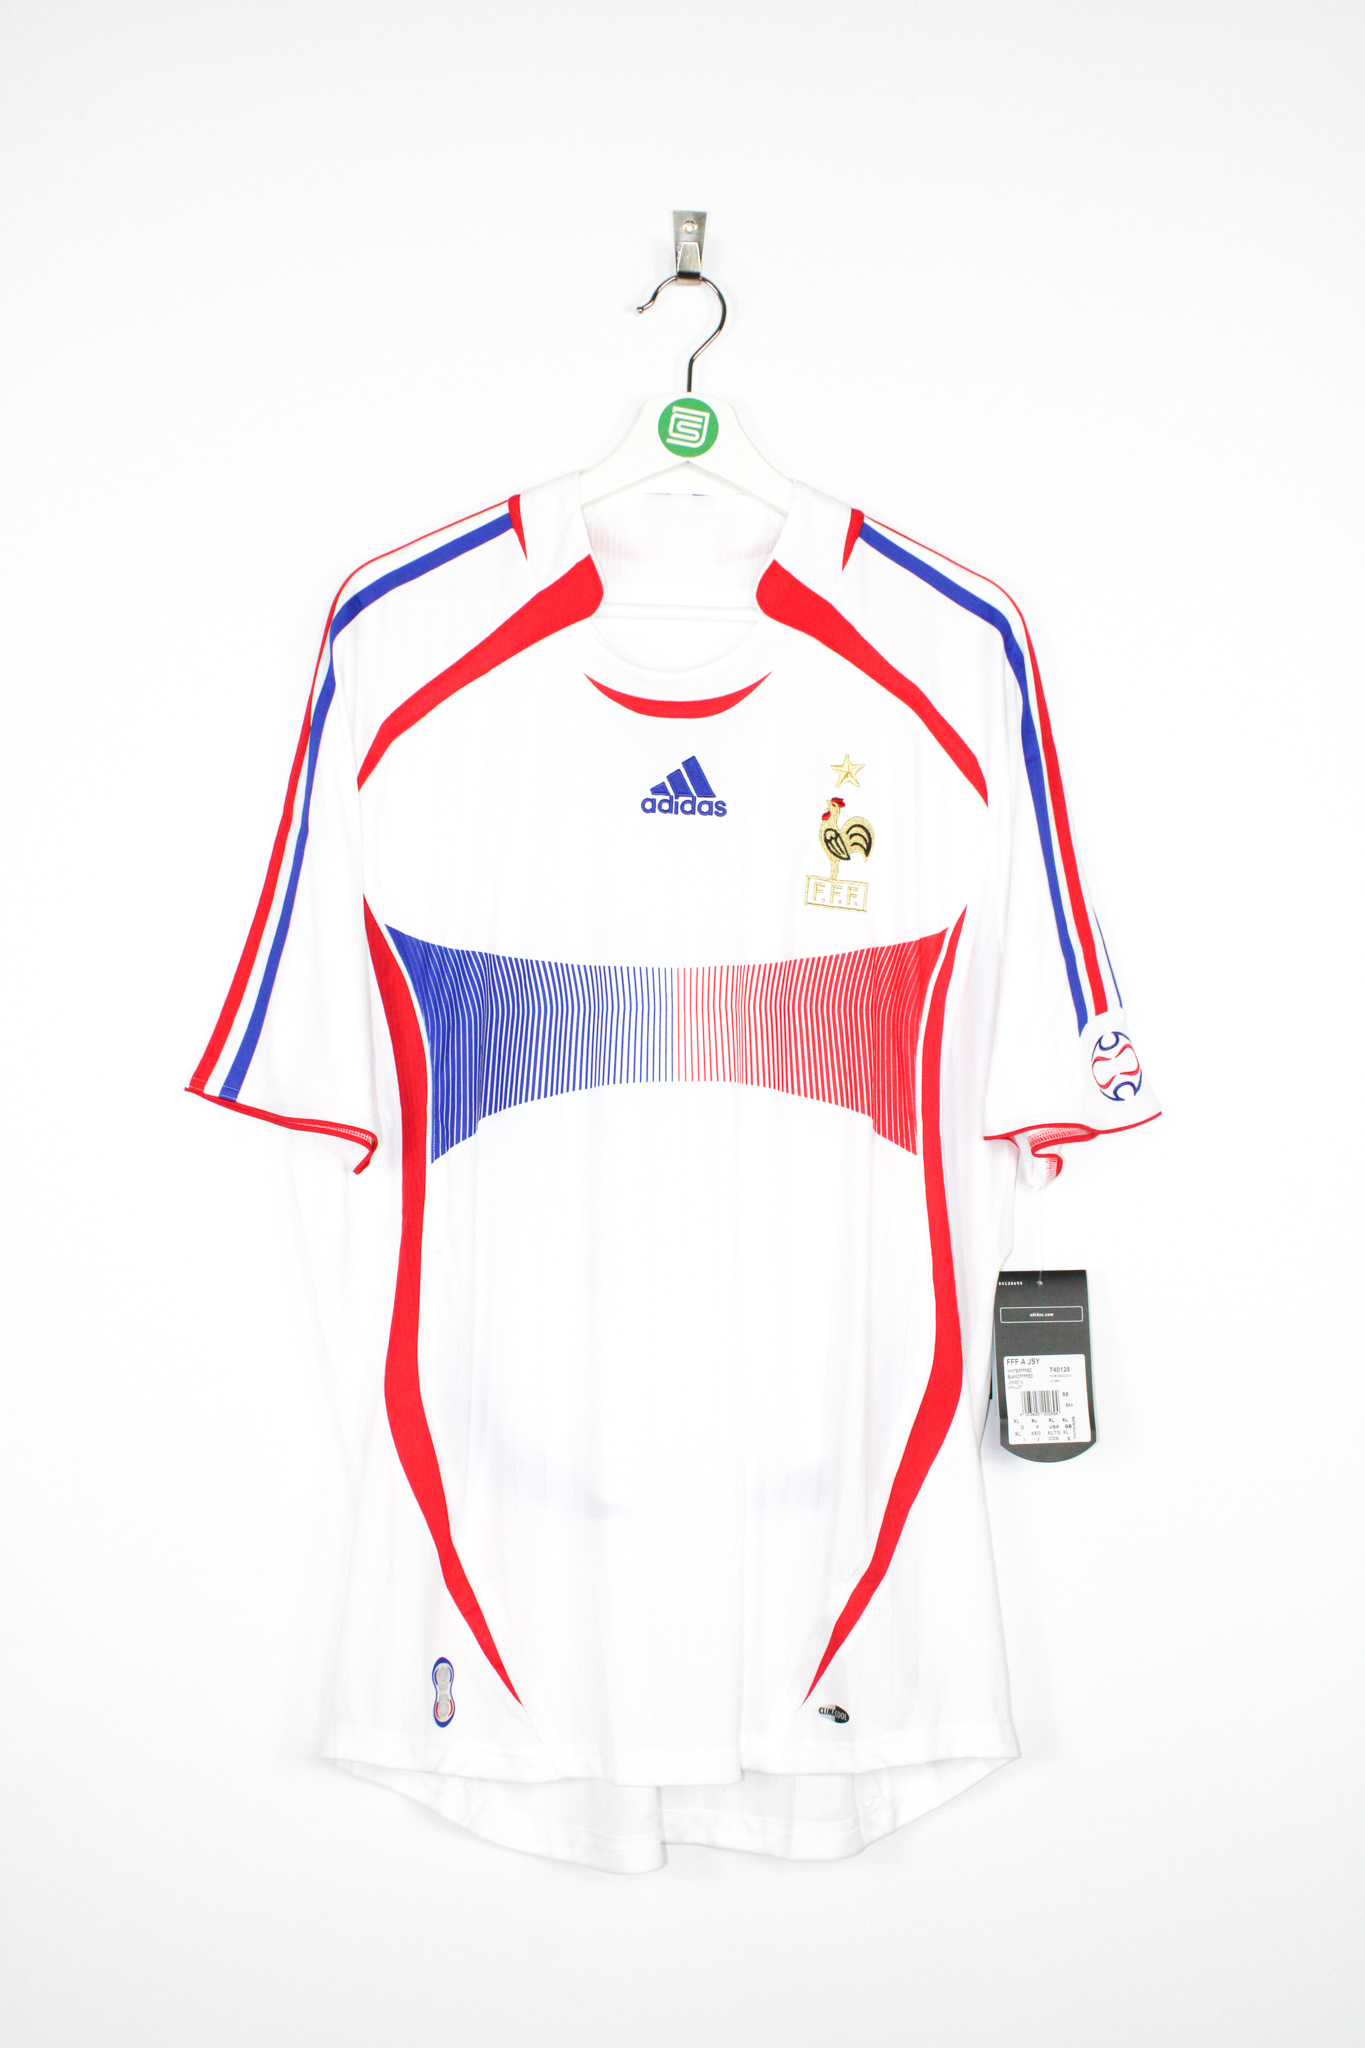 zidane 2006 world cup jersey